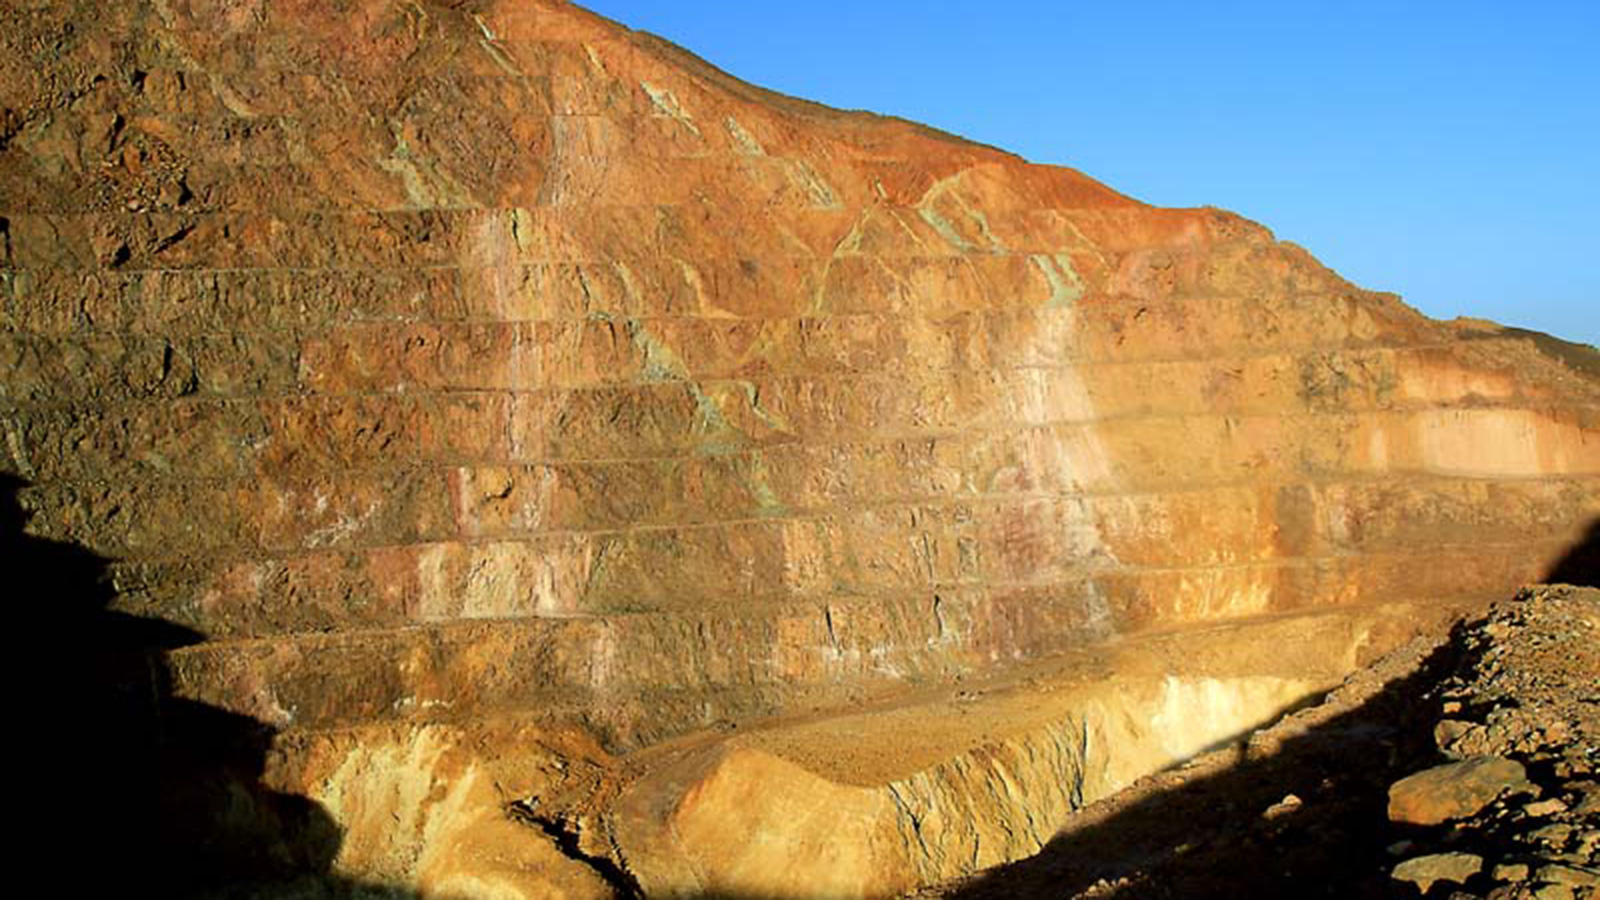 ‪بلغ إنتاج السودان من الذهب العام الماضي 105 أطنان‬ بلغ إنتاج السودان من الذهب العام الماضي 105 أطنان (الصحافة السودانية)